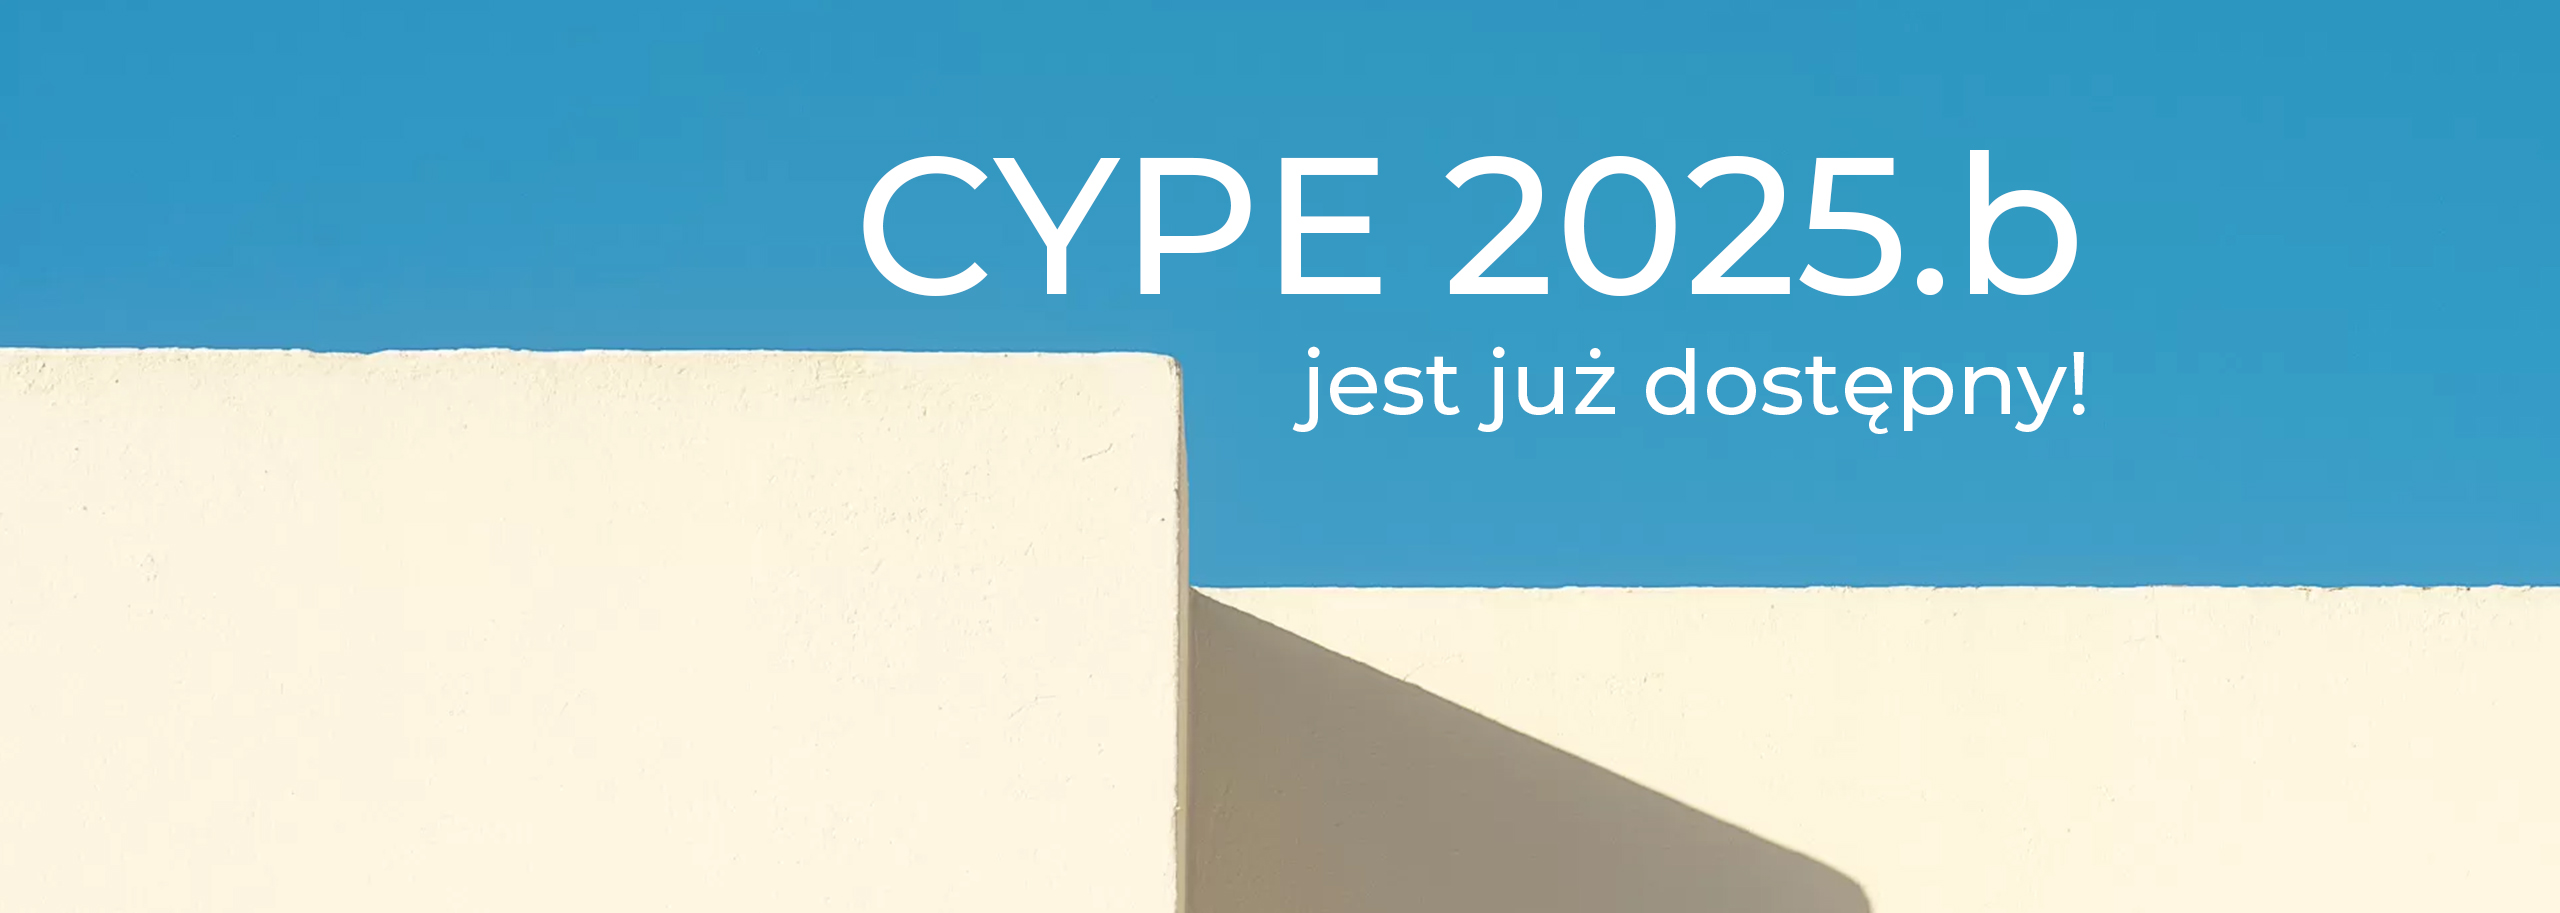 Poznaj nowe funkcje w CYPE 2025b!